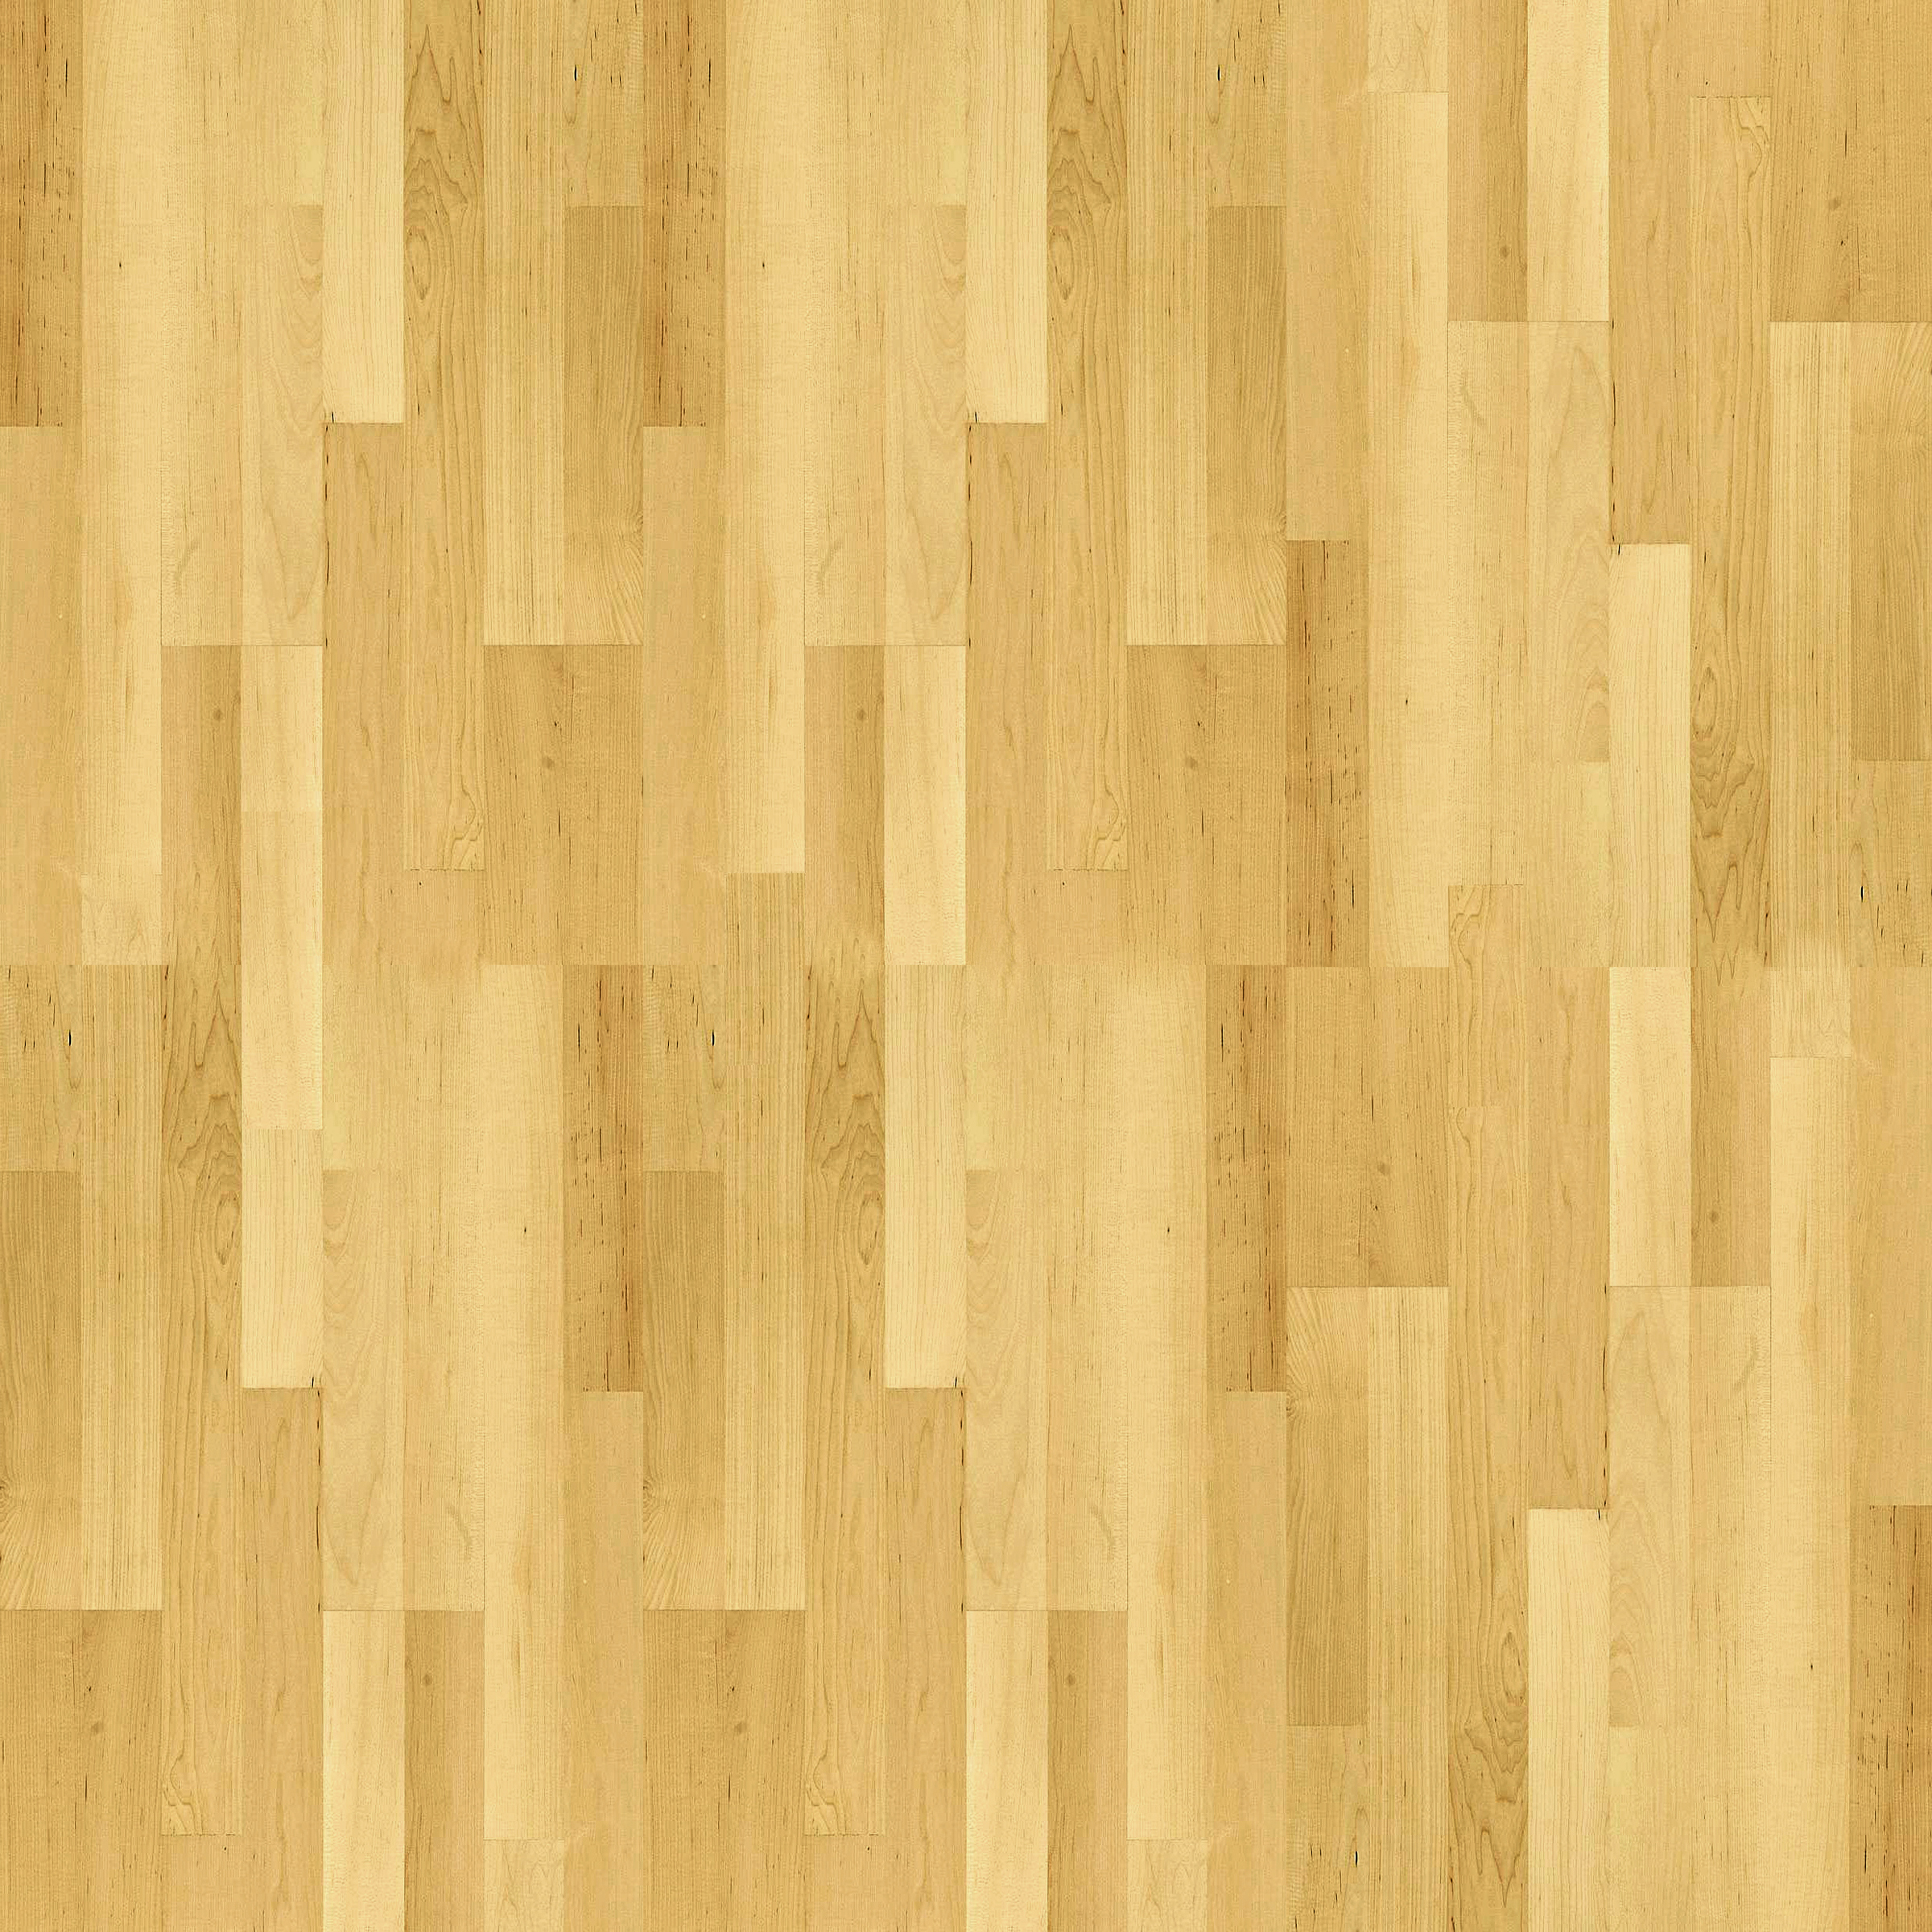 Wood Textures - wood 5.jpg